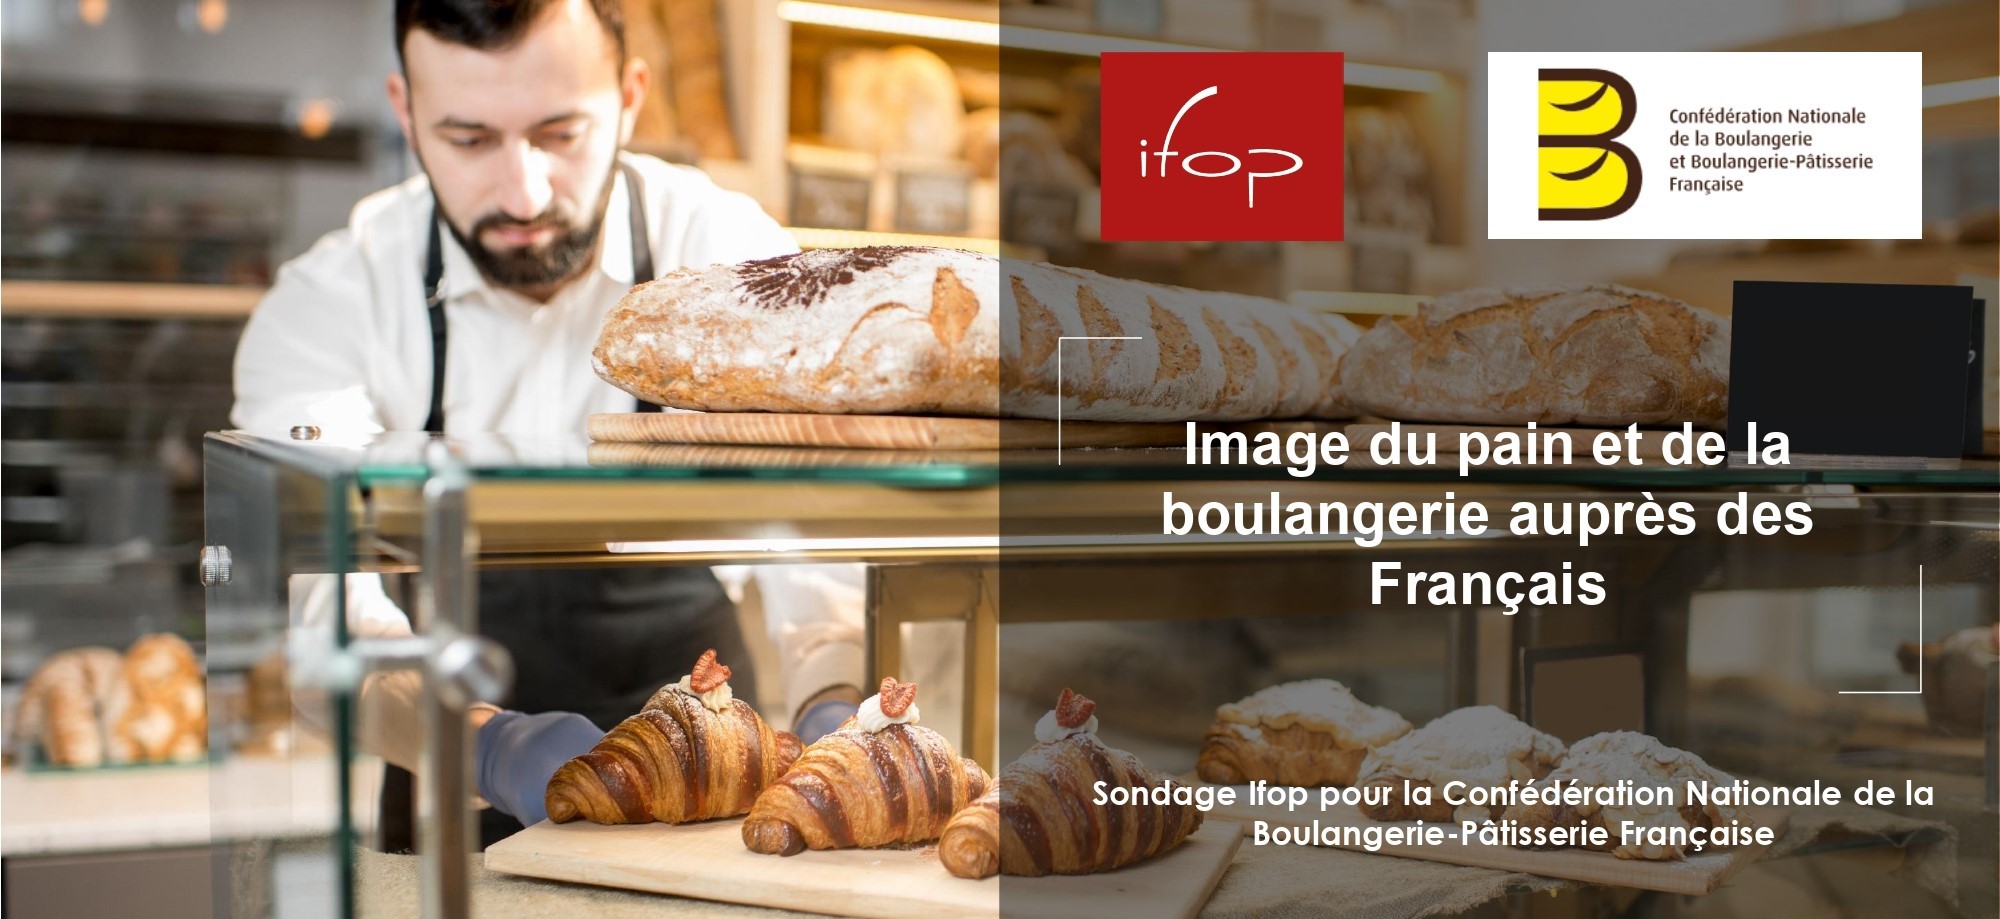 SONDAGE CNBPF / IFOP : l’image du pain et de la boulangerie auprès des Français